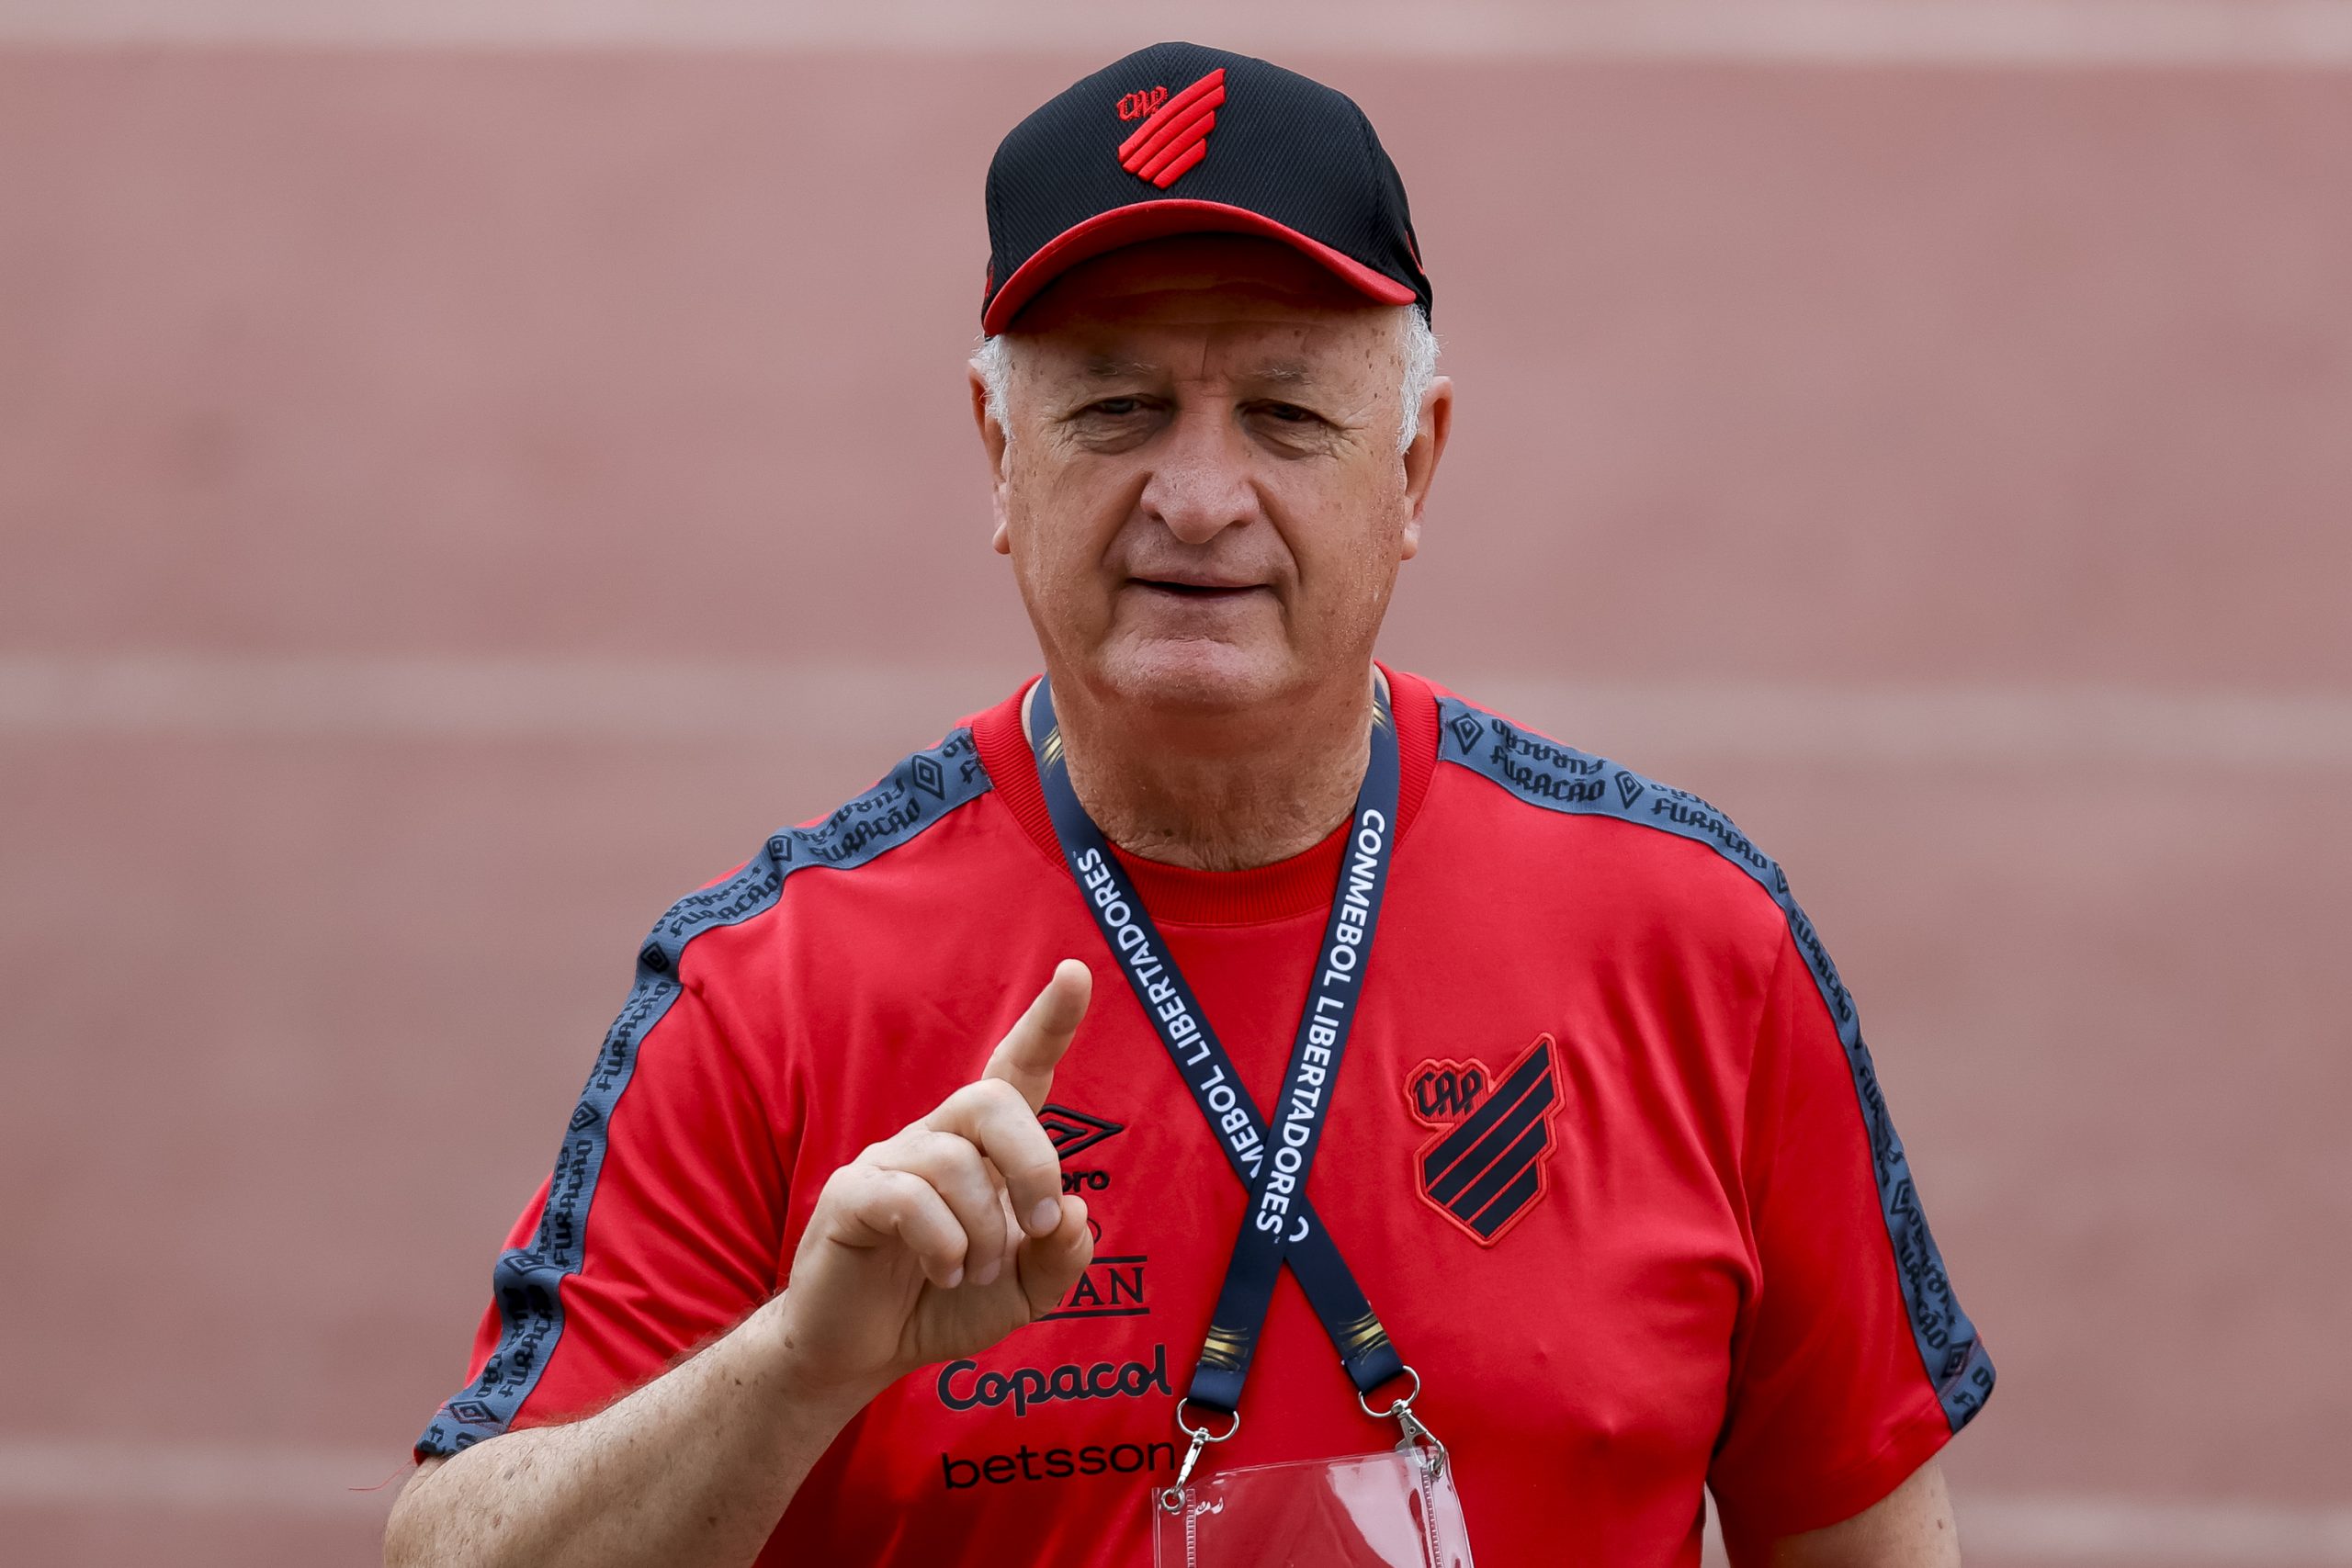 Felipão será o novo treinador do Atlético-MG (Foto: Buda Mendes/Getty Images)